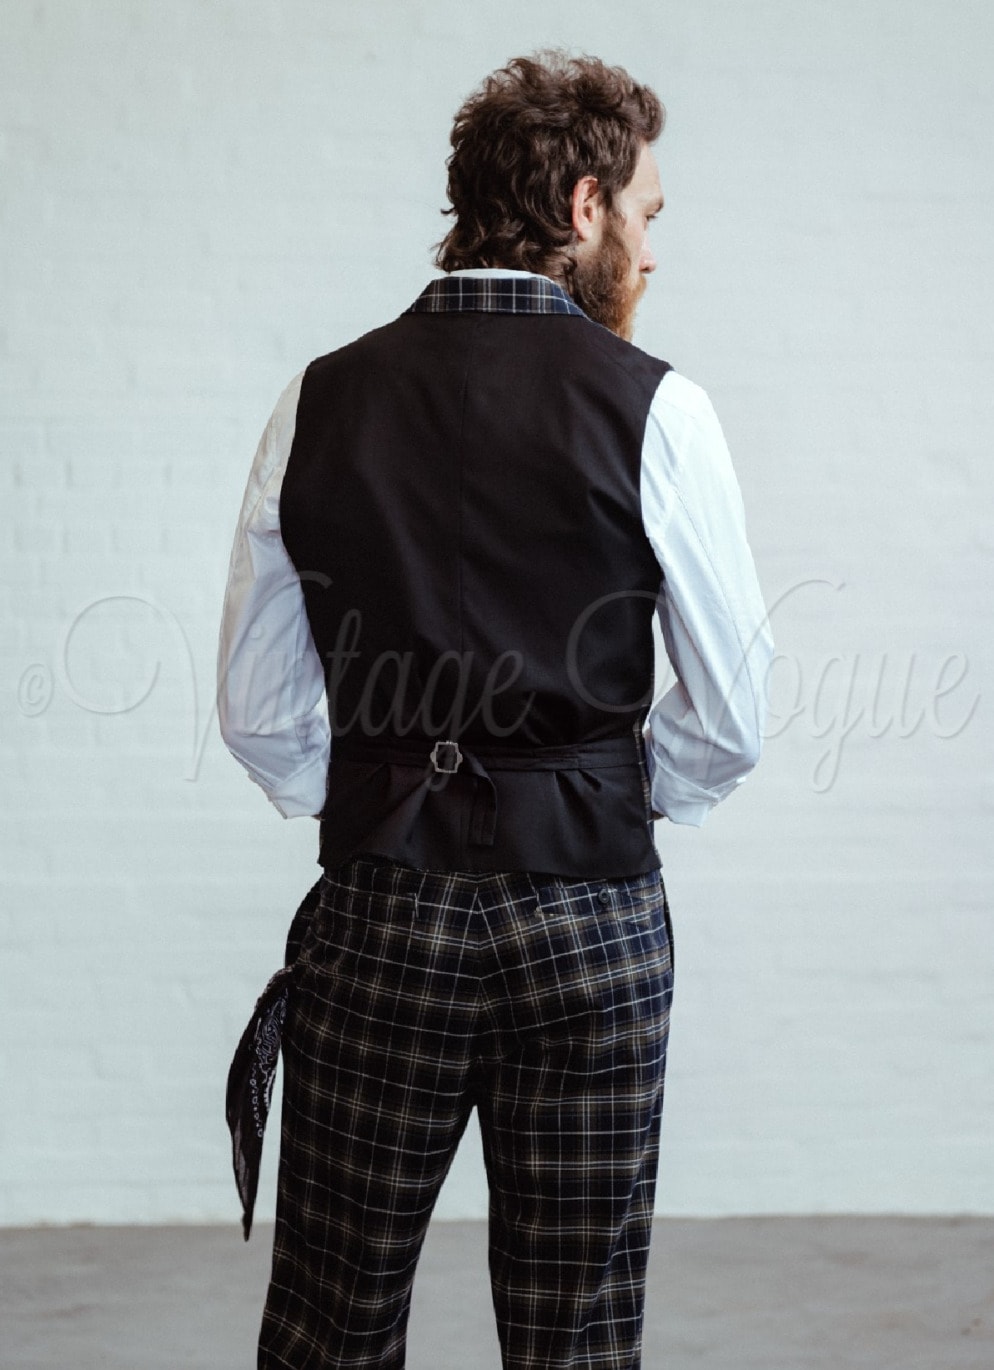 Chet Rock 40er Jahre Vintage Tweed Tartan Anzug Weste Chuck Waistcoat in Dunkelgrün Peaky Blinders Mode Stil Bekleidung